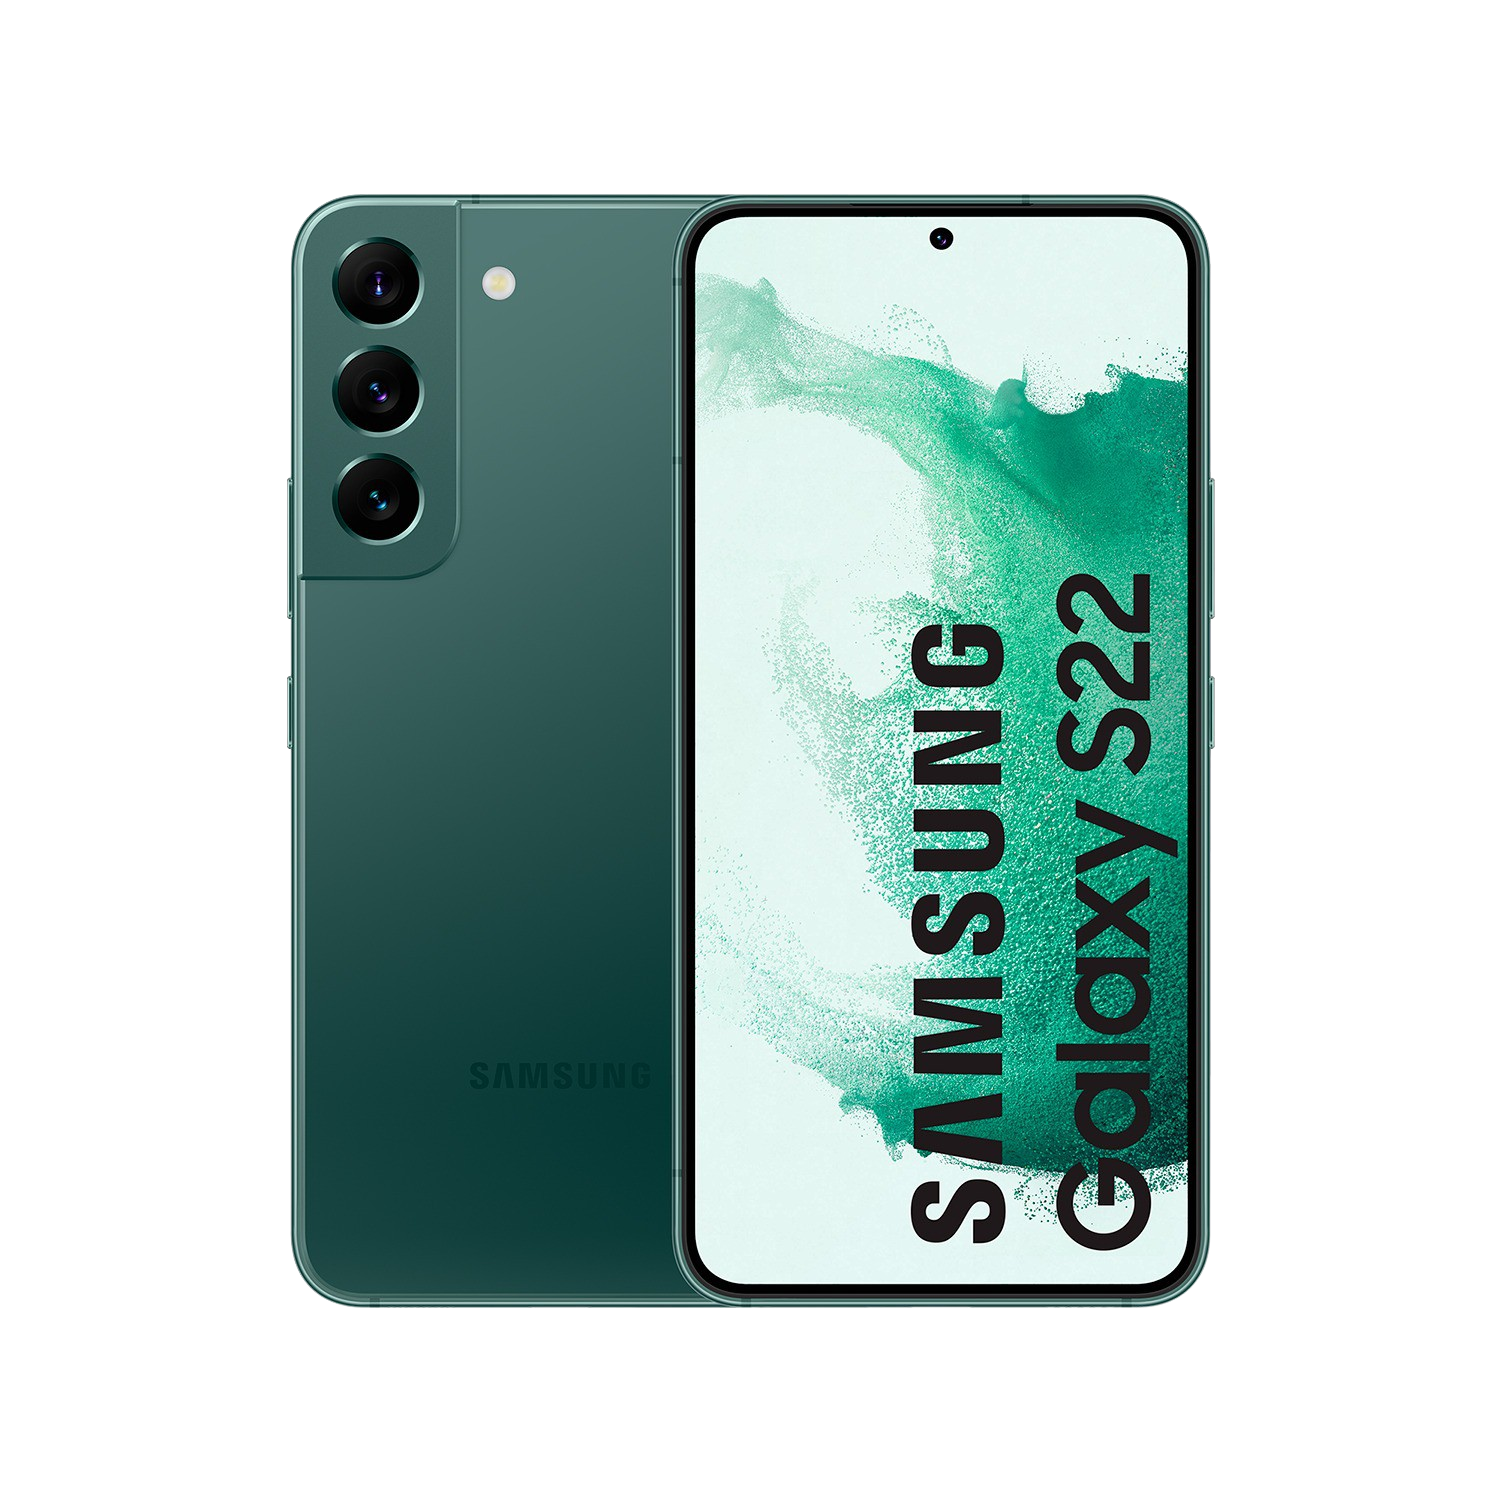 Samsung Galaxy S22 5g 8gb de ram 128gb verde smartphone 6.1 8 128 8128gb green fhd+ exynos 2200 3700 12 1549 61“ 8128 120hz 50121010mpx 128gb+8gb s22+ 61